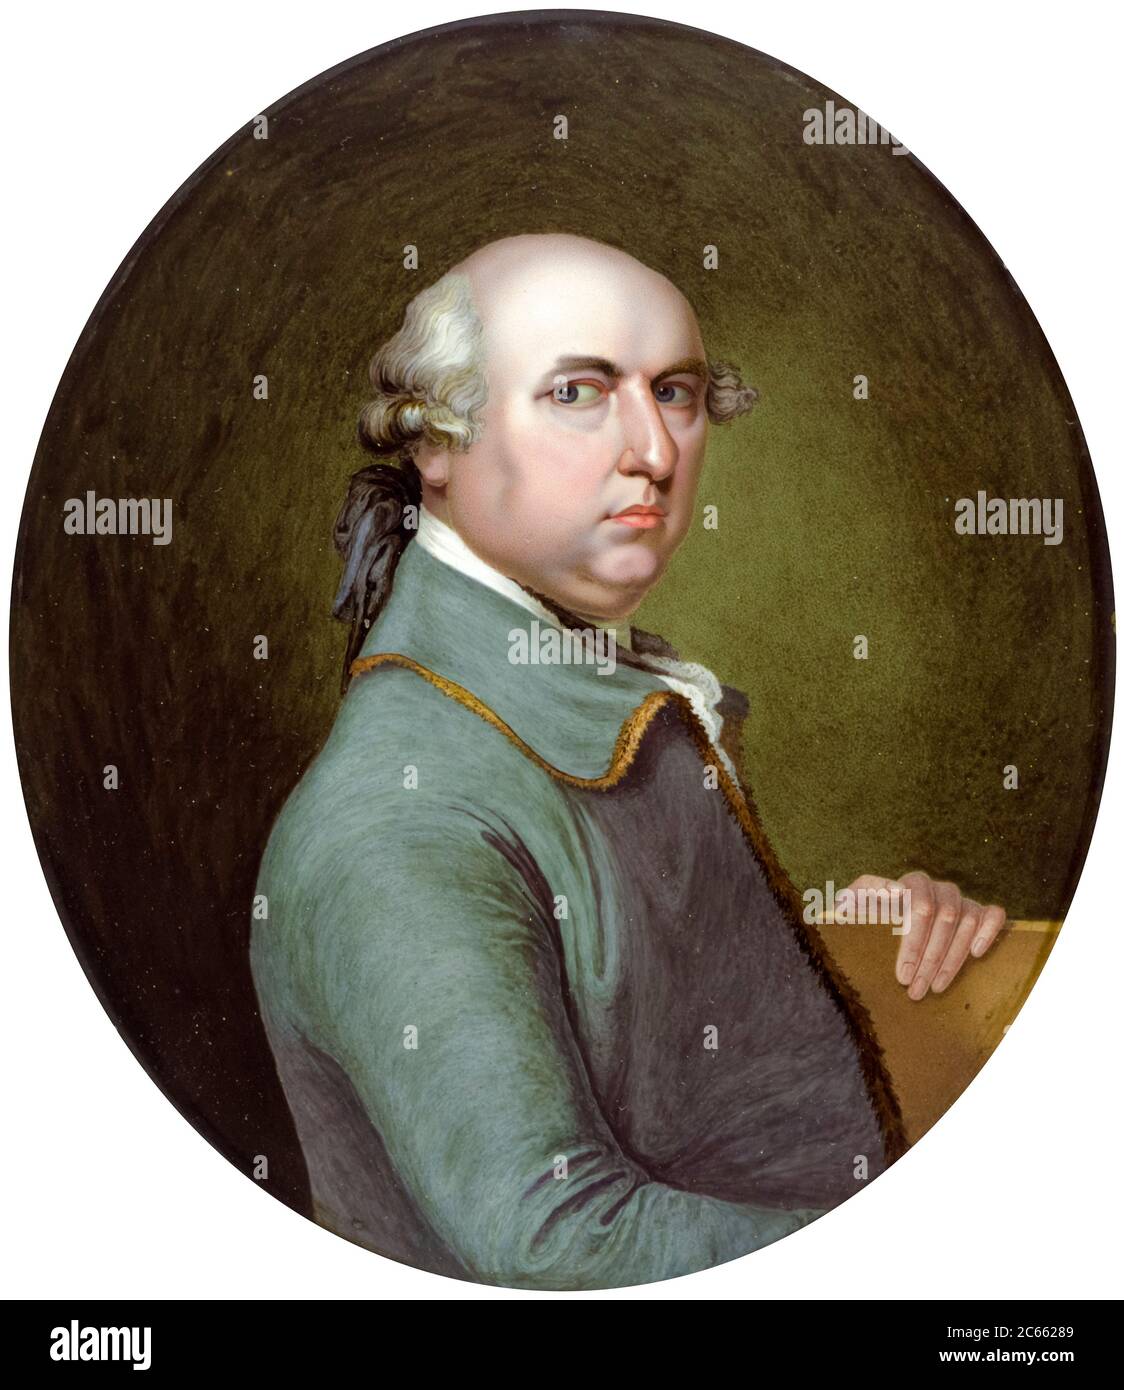 George Stubbs (1724-1806), peintre anglais, portrait peint par William H Craft, 1775 Banque D'Images